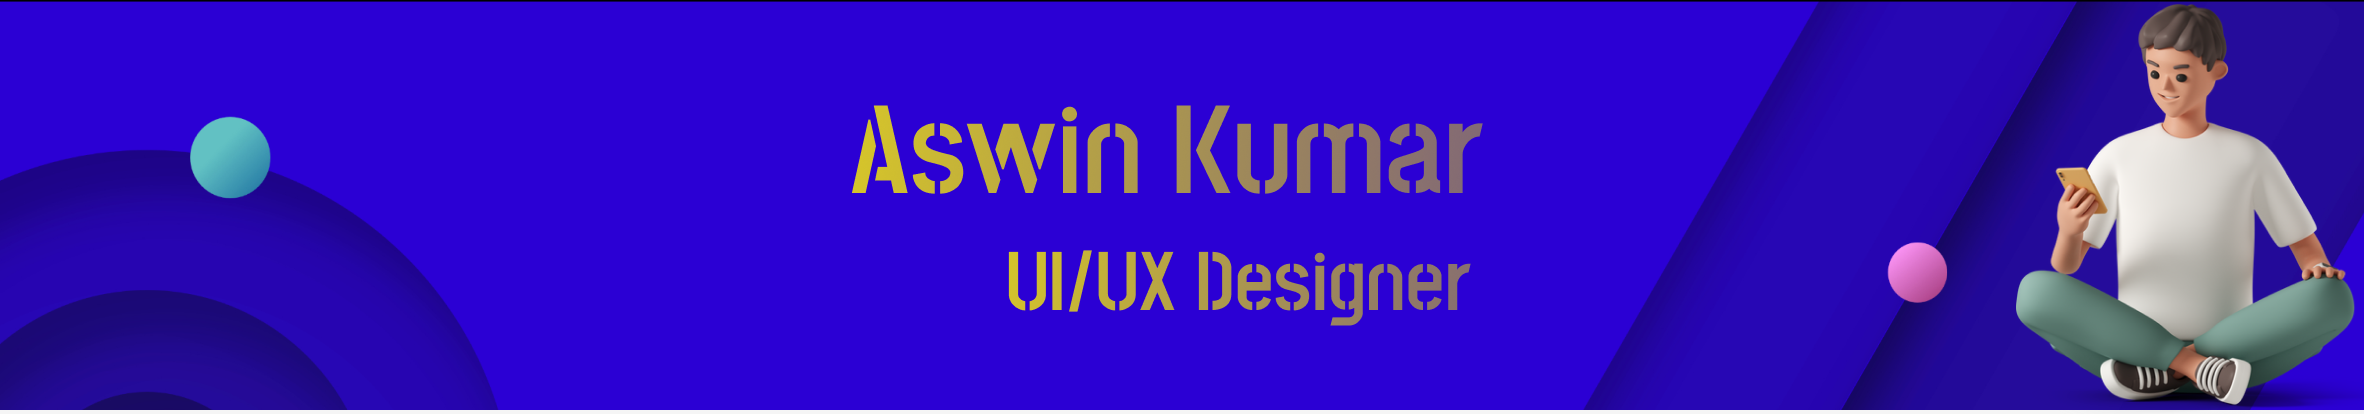 Aswin kumar's profile banner